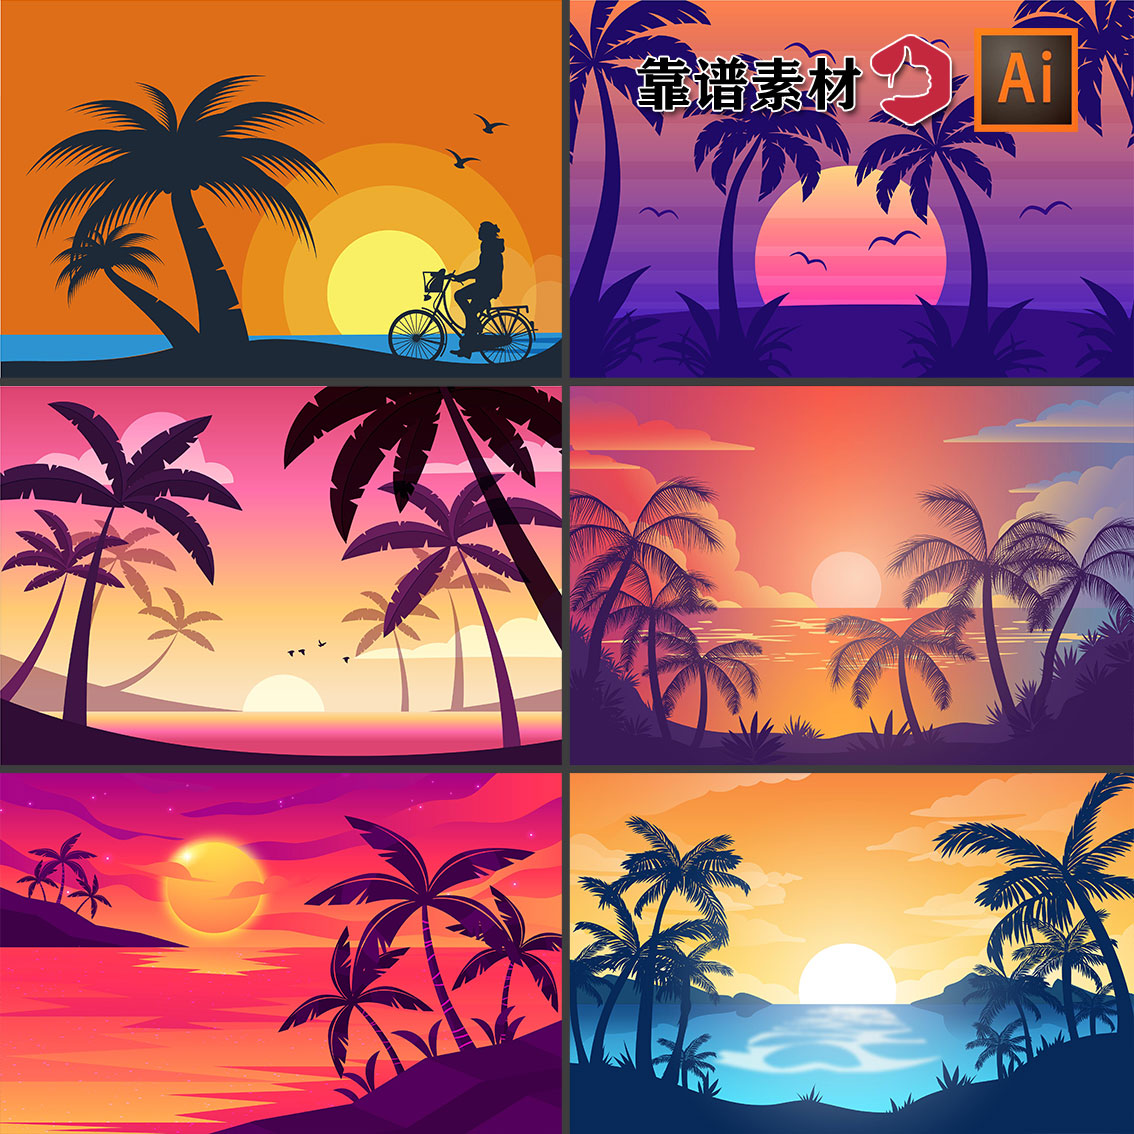 卡通风景插画日出夕阳海边椰树剪影夏季海滩AI设计素材